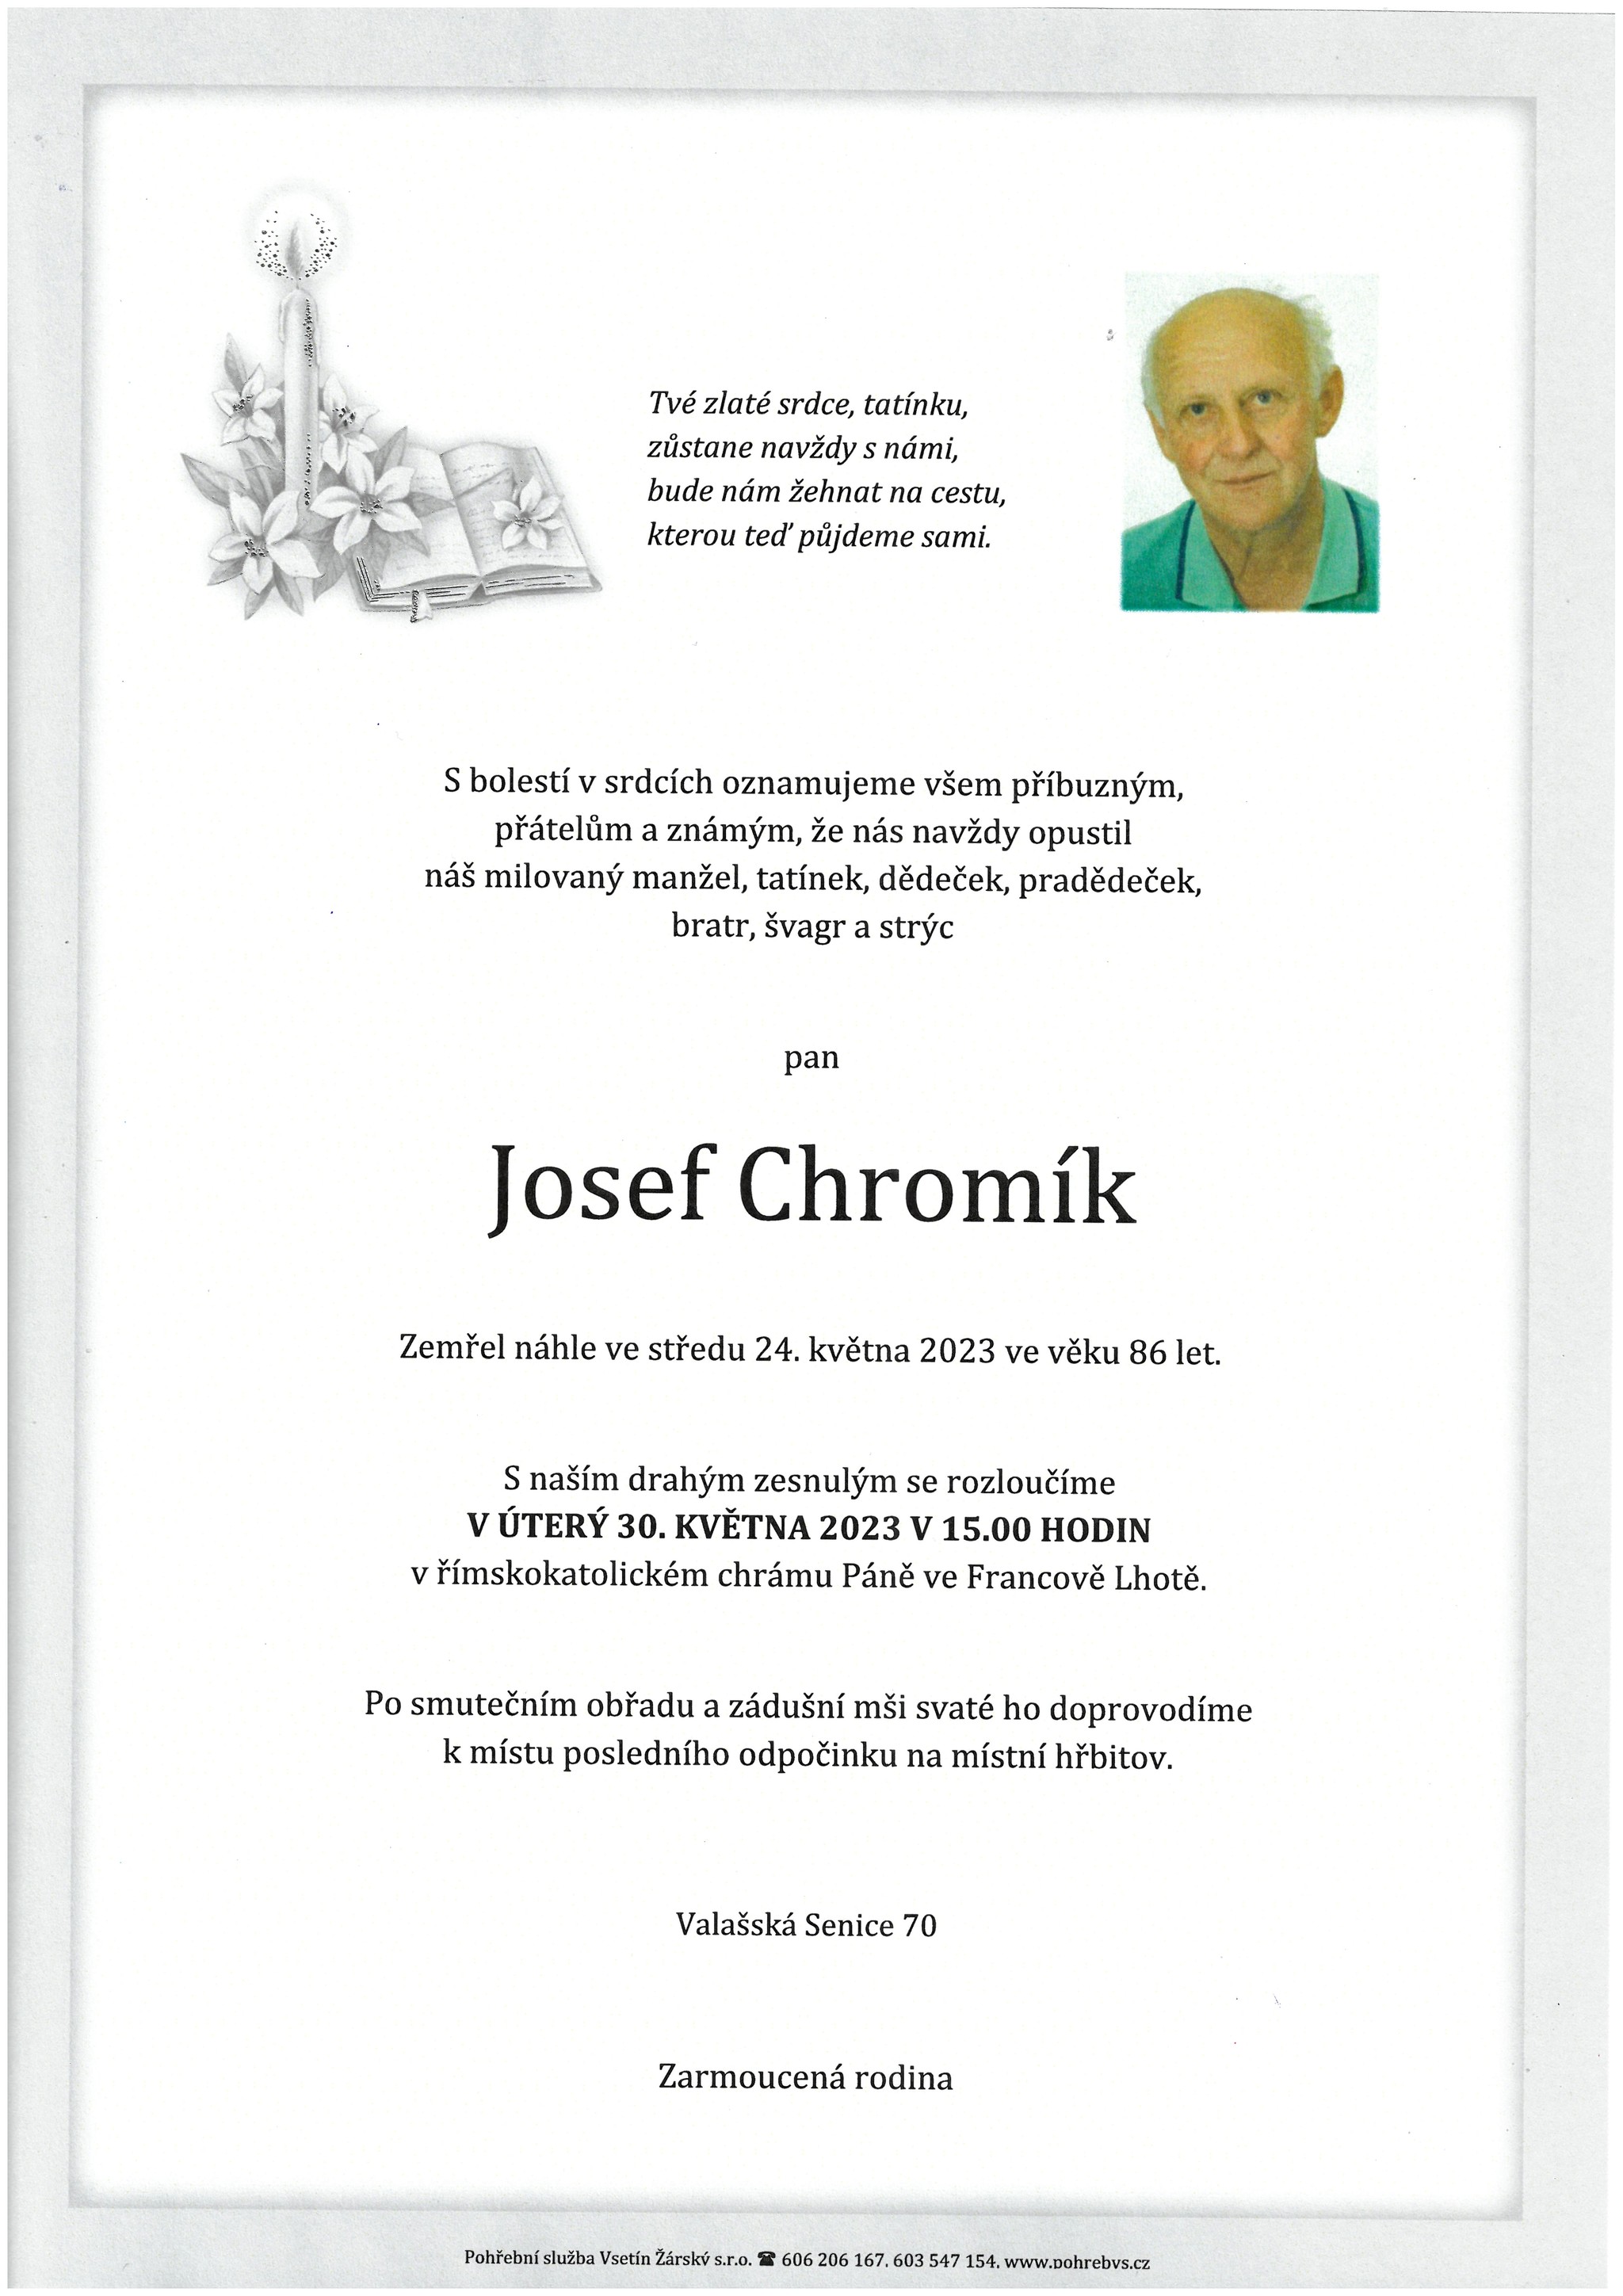 Josef Chromík